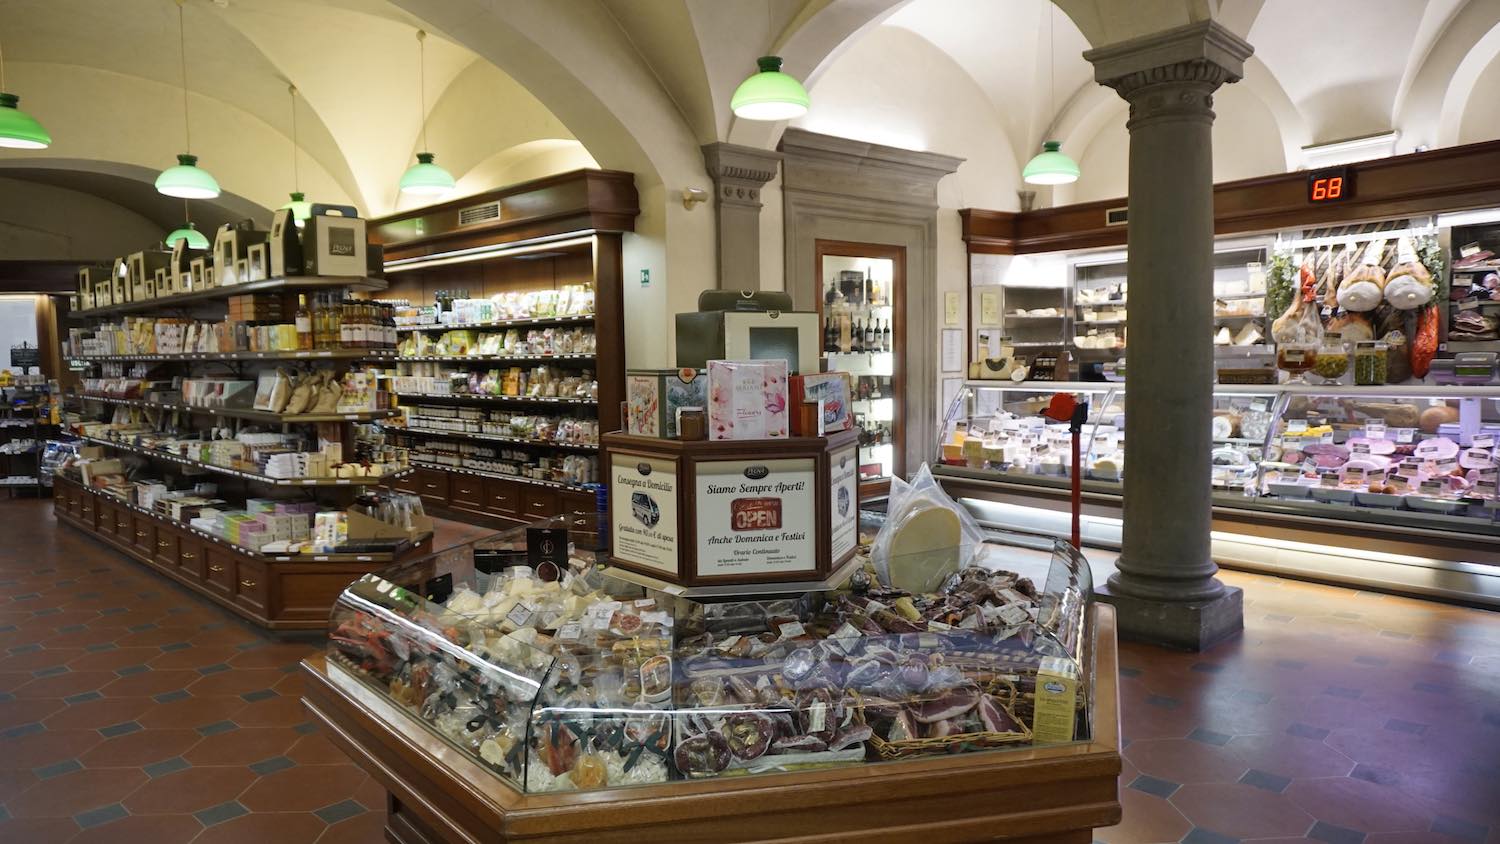 La gastronomia Pegna è il più famoso Grocery Store a Firenze. Nata nel 1860 è oggi uno dei più importanti negozi di riferimento per prodotti alimentari e non di alta qualità a Firenze.